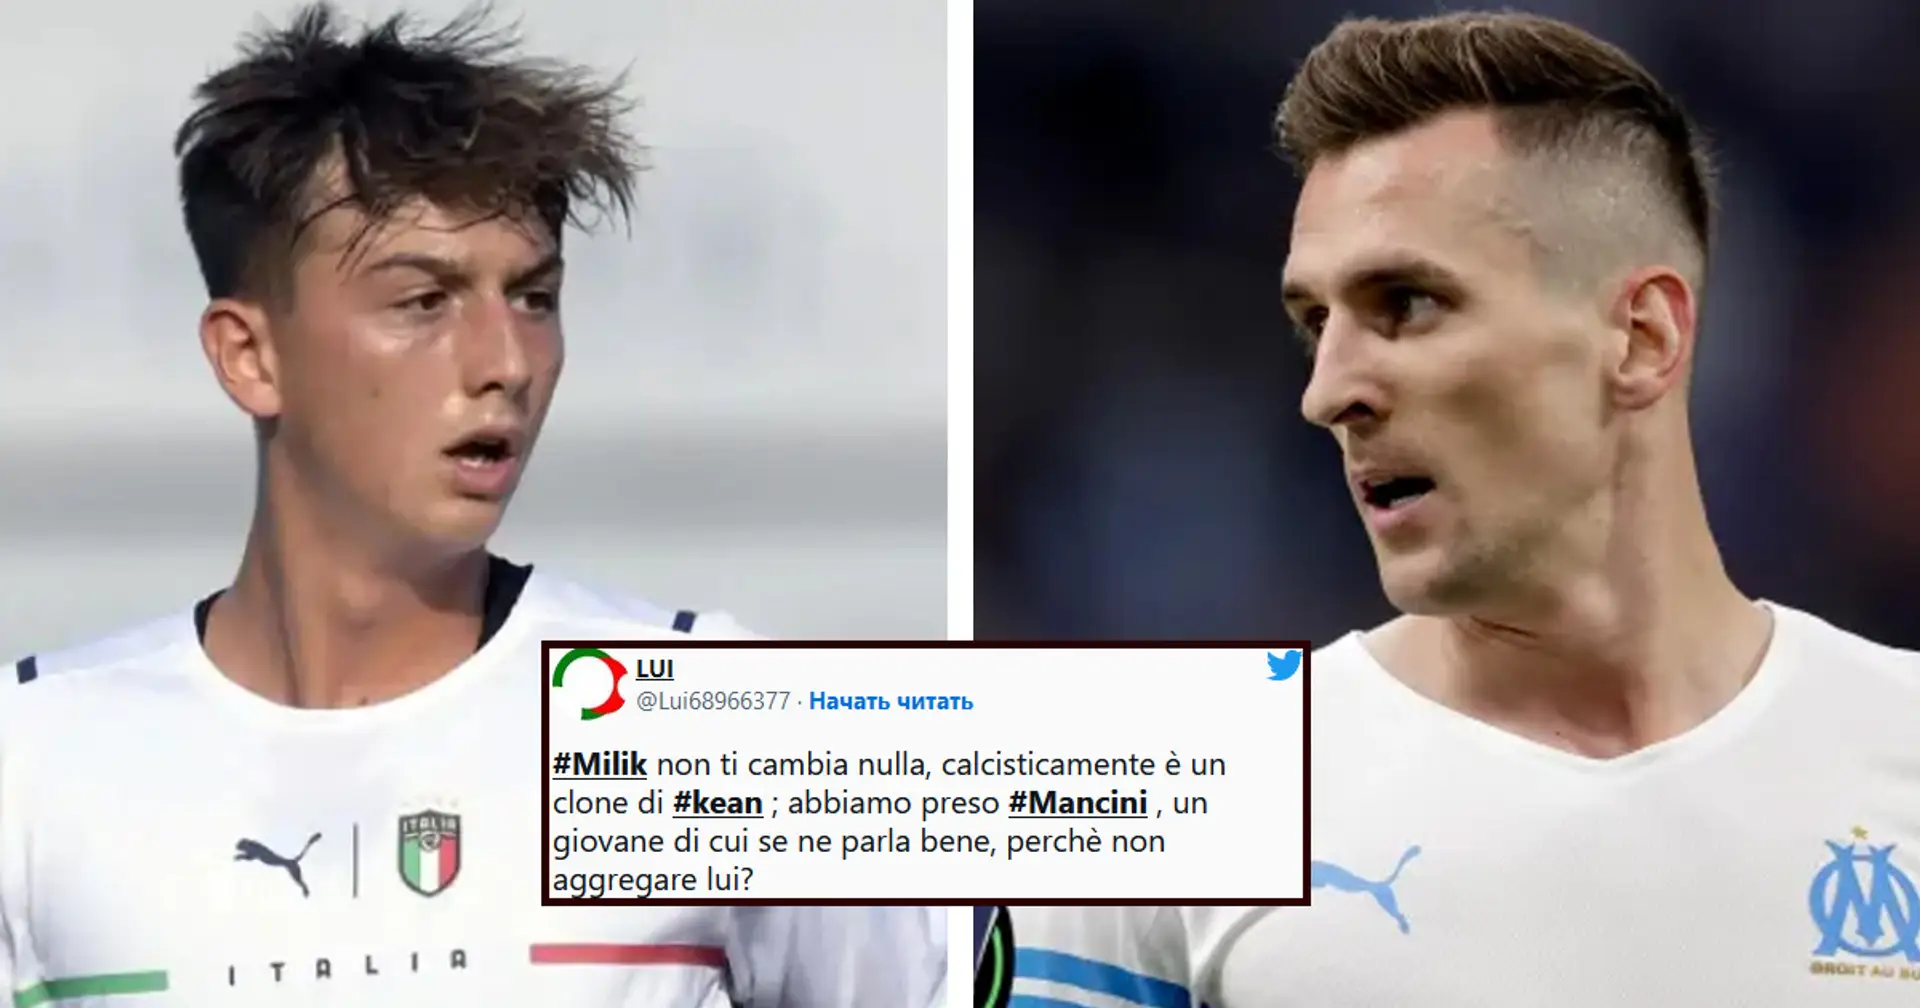 "Abbiamo Mancini, Milik non ti cambia nulla!": i tifosi della Juve consigliano nuove mosse per rinforzare l'attacco